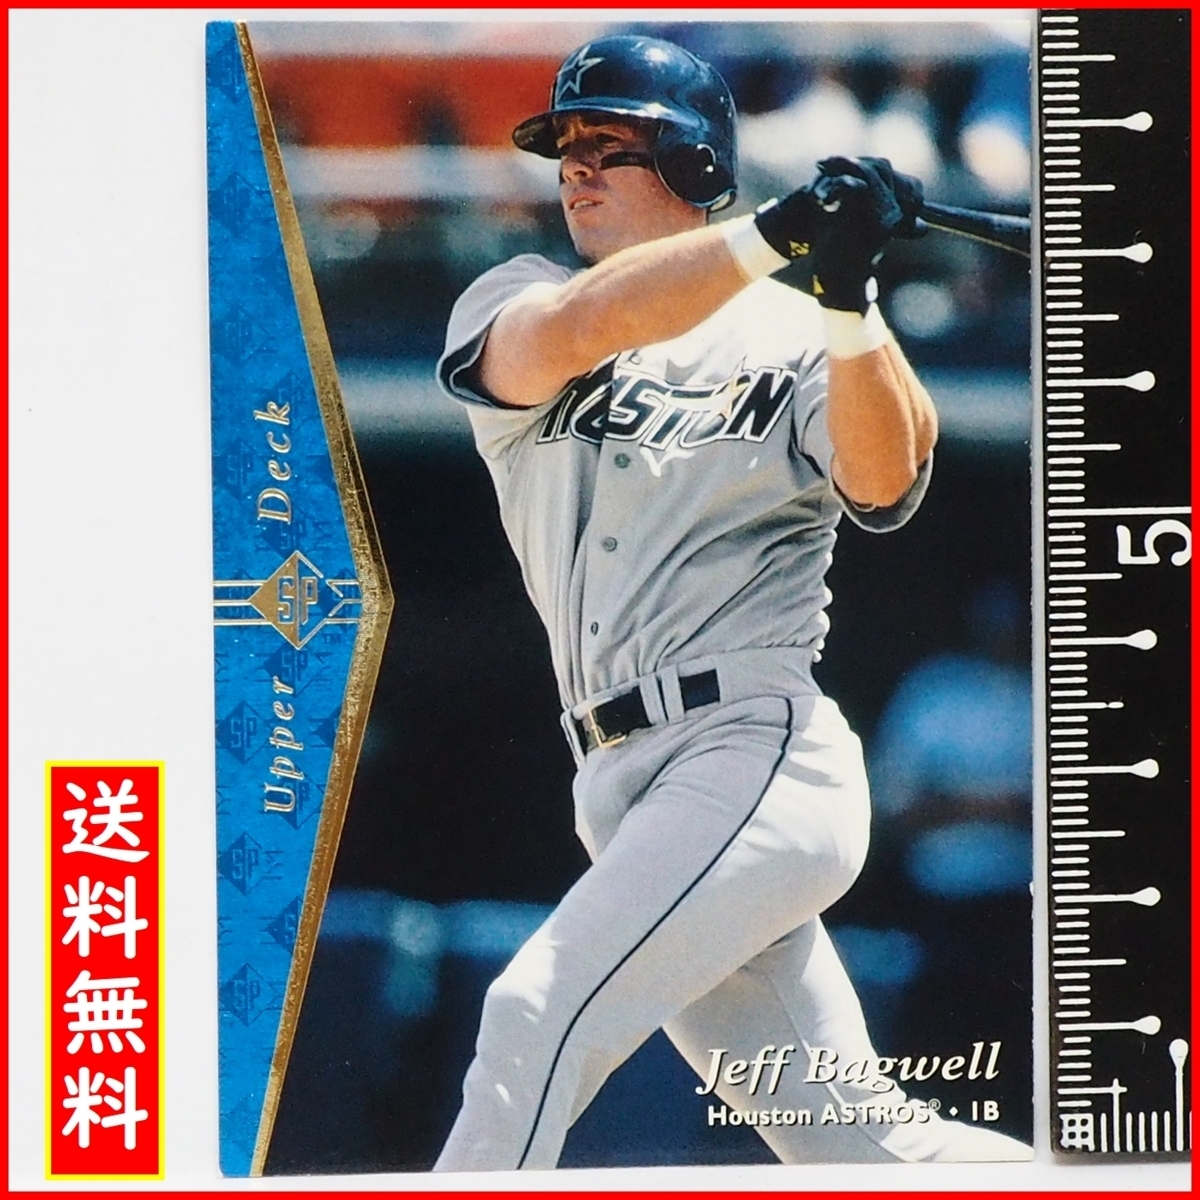 1995 Верхняя палуба SP #60 [Джефф Багвелл (Astros)] 1995 MLB Высшая лига Бейсбольная карточка Бейсбола Бейсбола Верхняя палуба Бейсбол [Включена доставка]